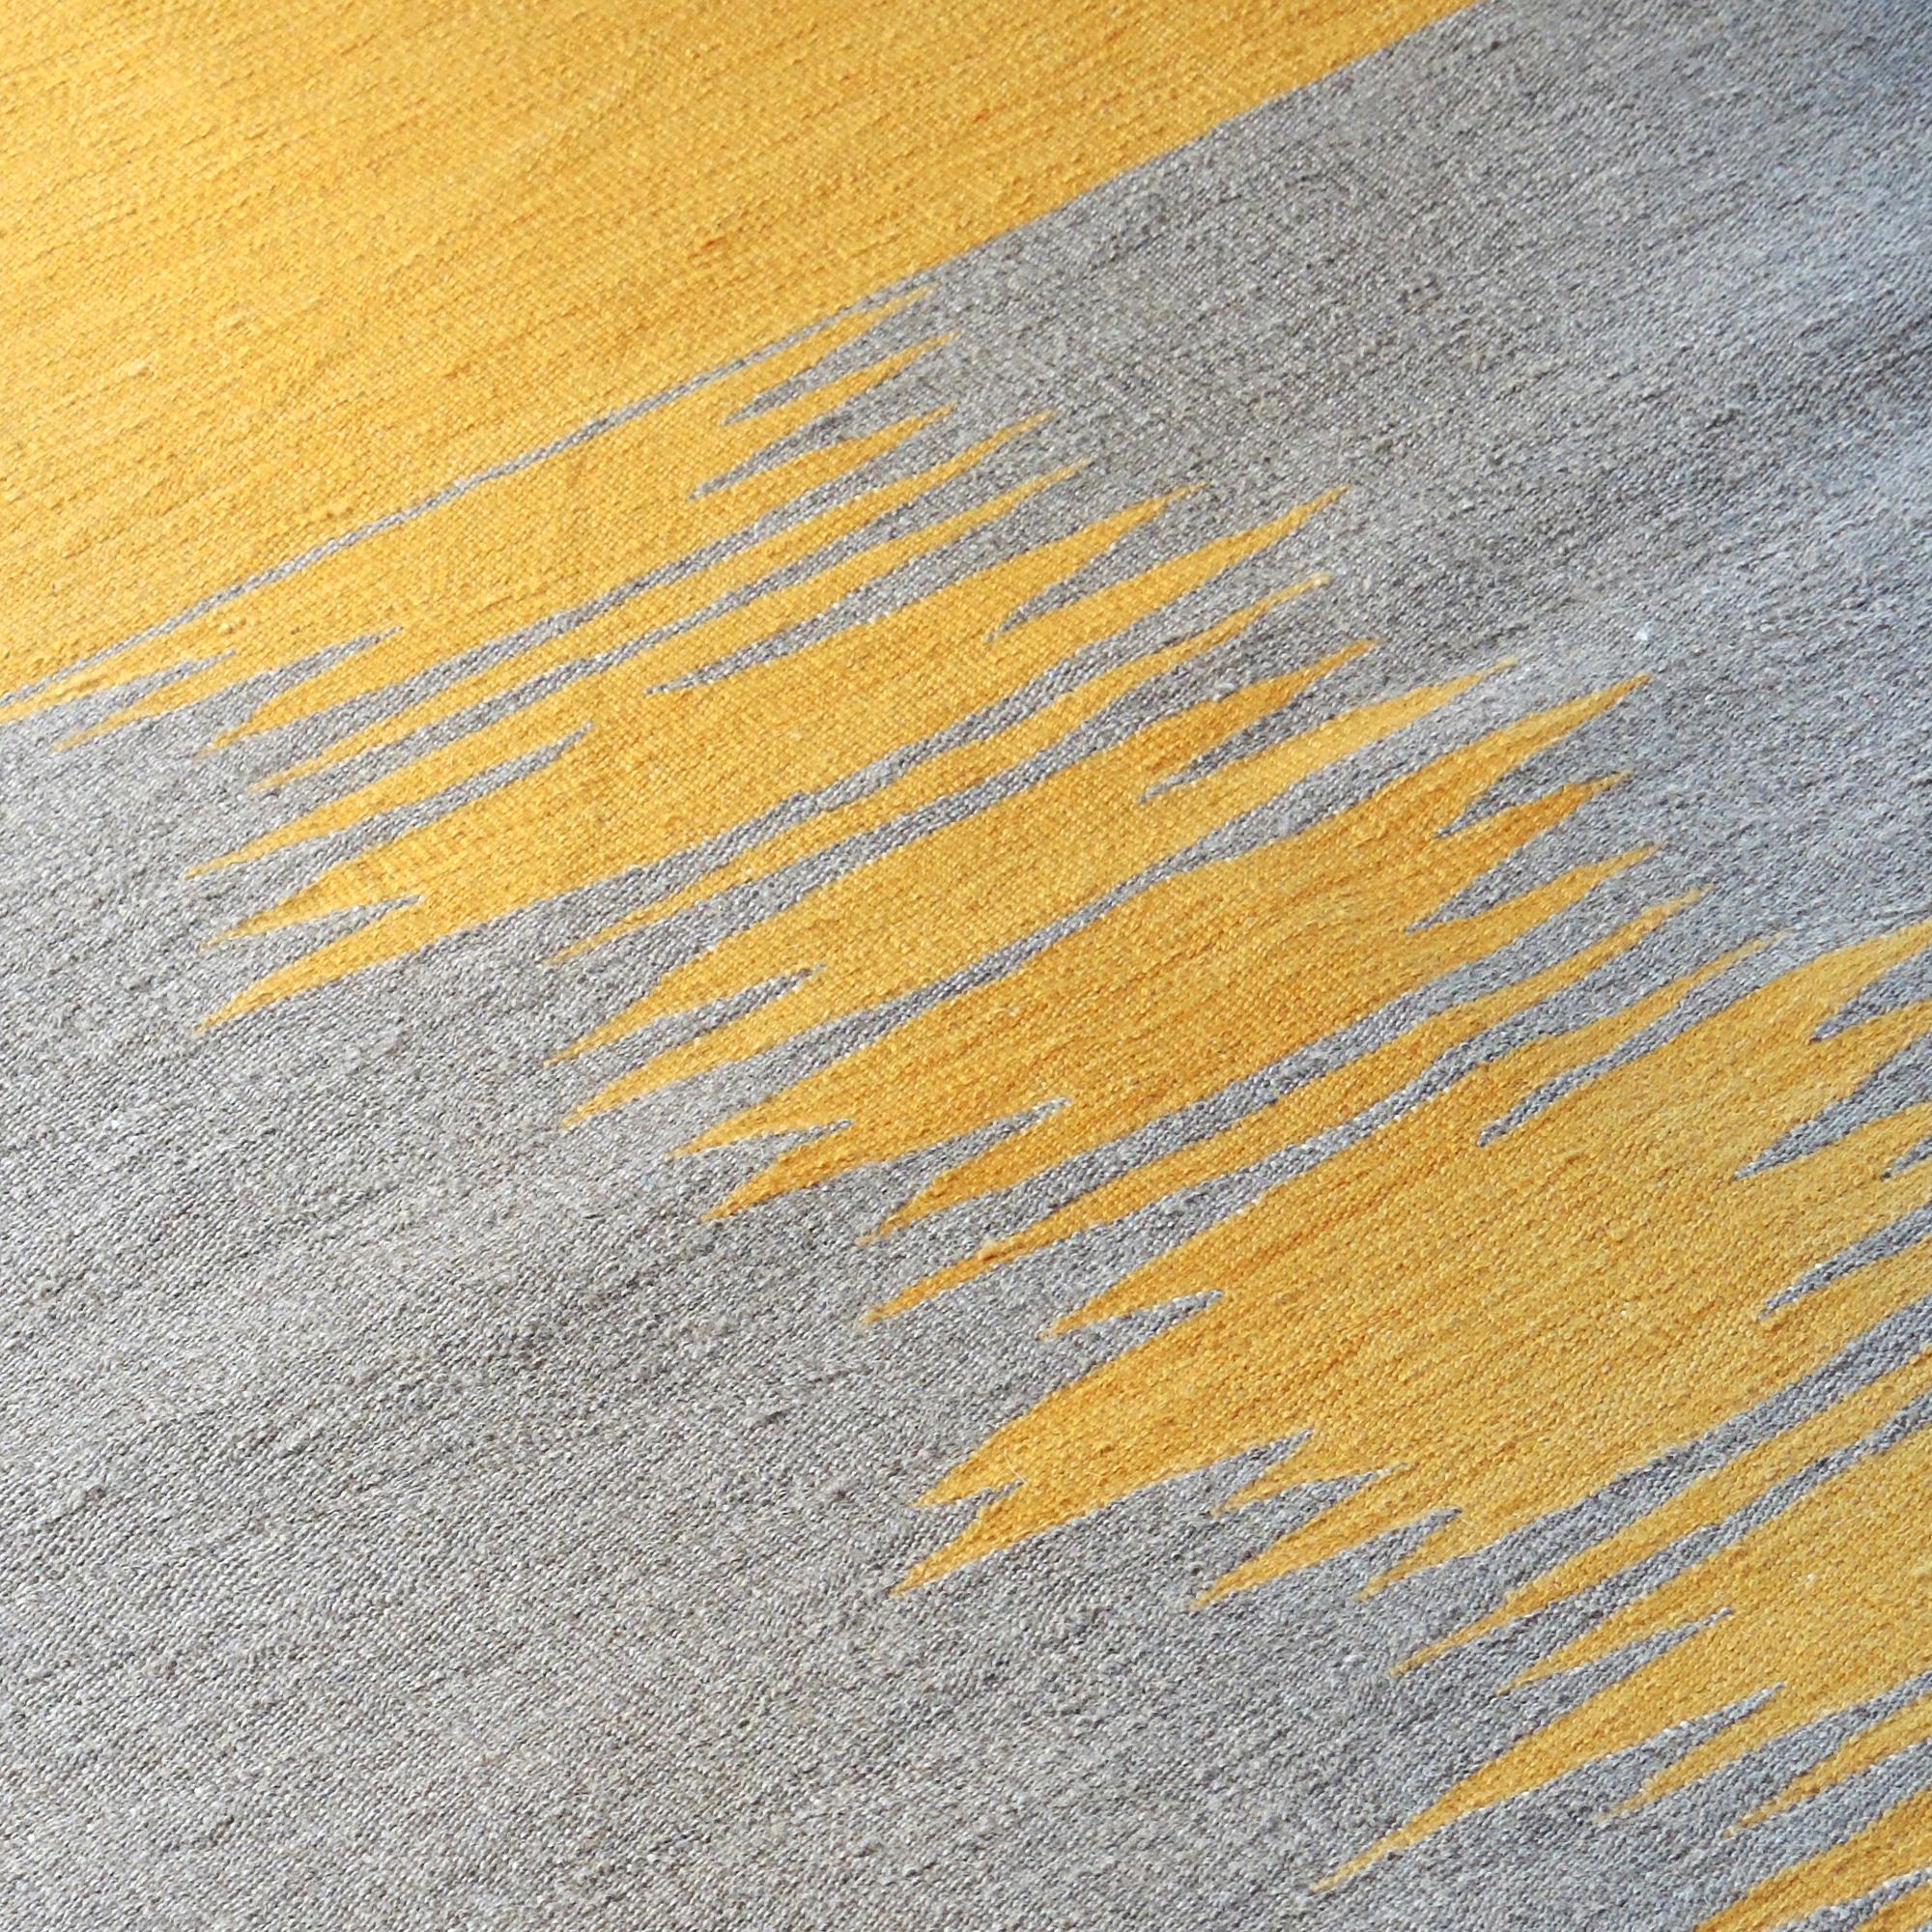 Der Kelimteppich Yakamoz No 6 gehört zu einer Serie von Kelims, die von der Poesie der Lichtreflexe auf der Meeresoberfläche inspiriert sind. Die abstrakten Muster, die an wechselnde Farbübergänge durch reflektiertes Licht erinnern, werden von